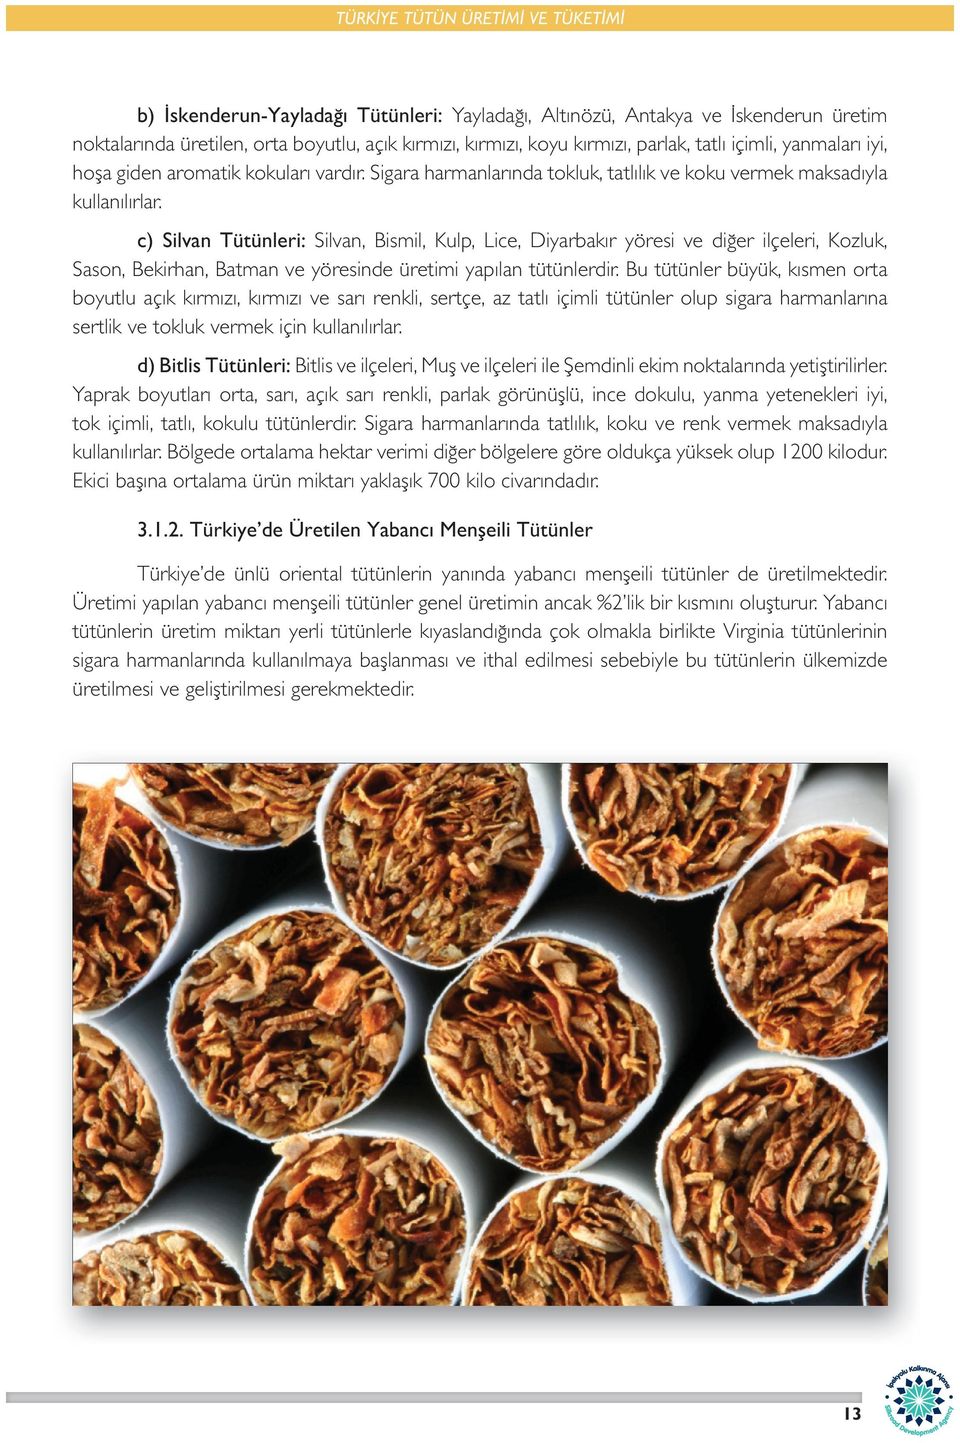 c) Silvan Tütünleri: Silvan, Bismil, Kulp, Lice, Diyarbakır yöresi ve diğer ilçeleri, Kozluk, Sason, Bekirhan, Batman ve yöresinde üretimi yapılan tütünlerdir.